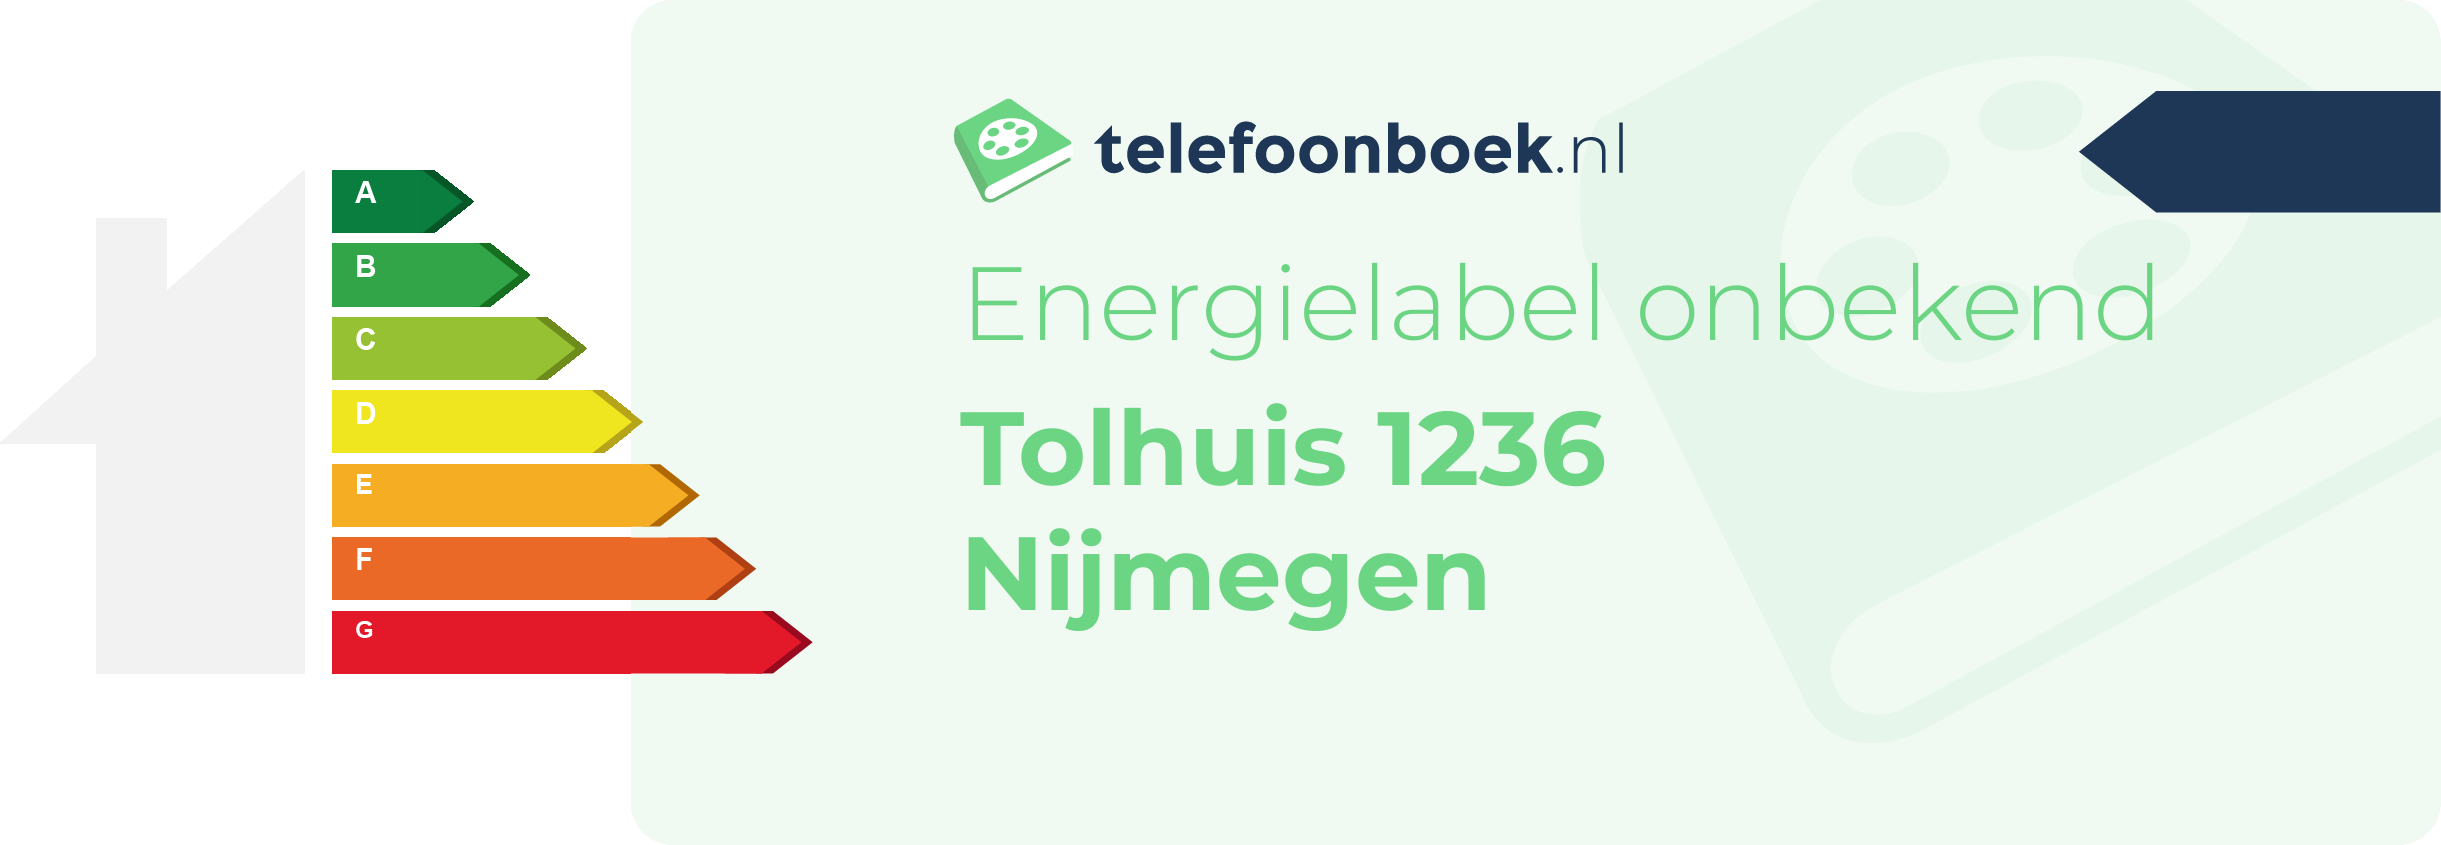 Energielabel Tolhuis 1236 Nijmegen